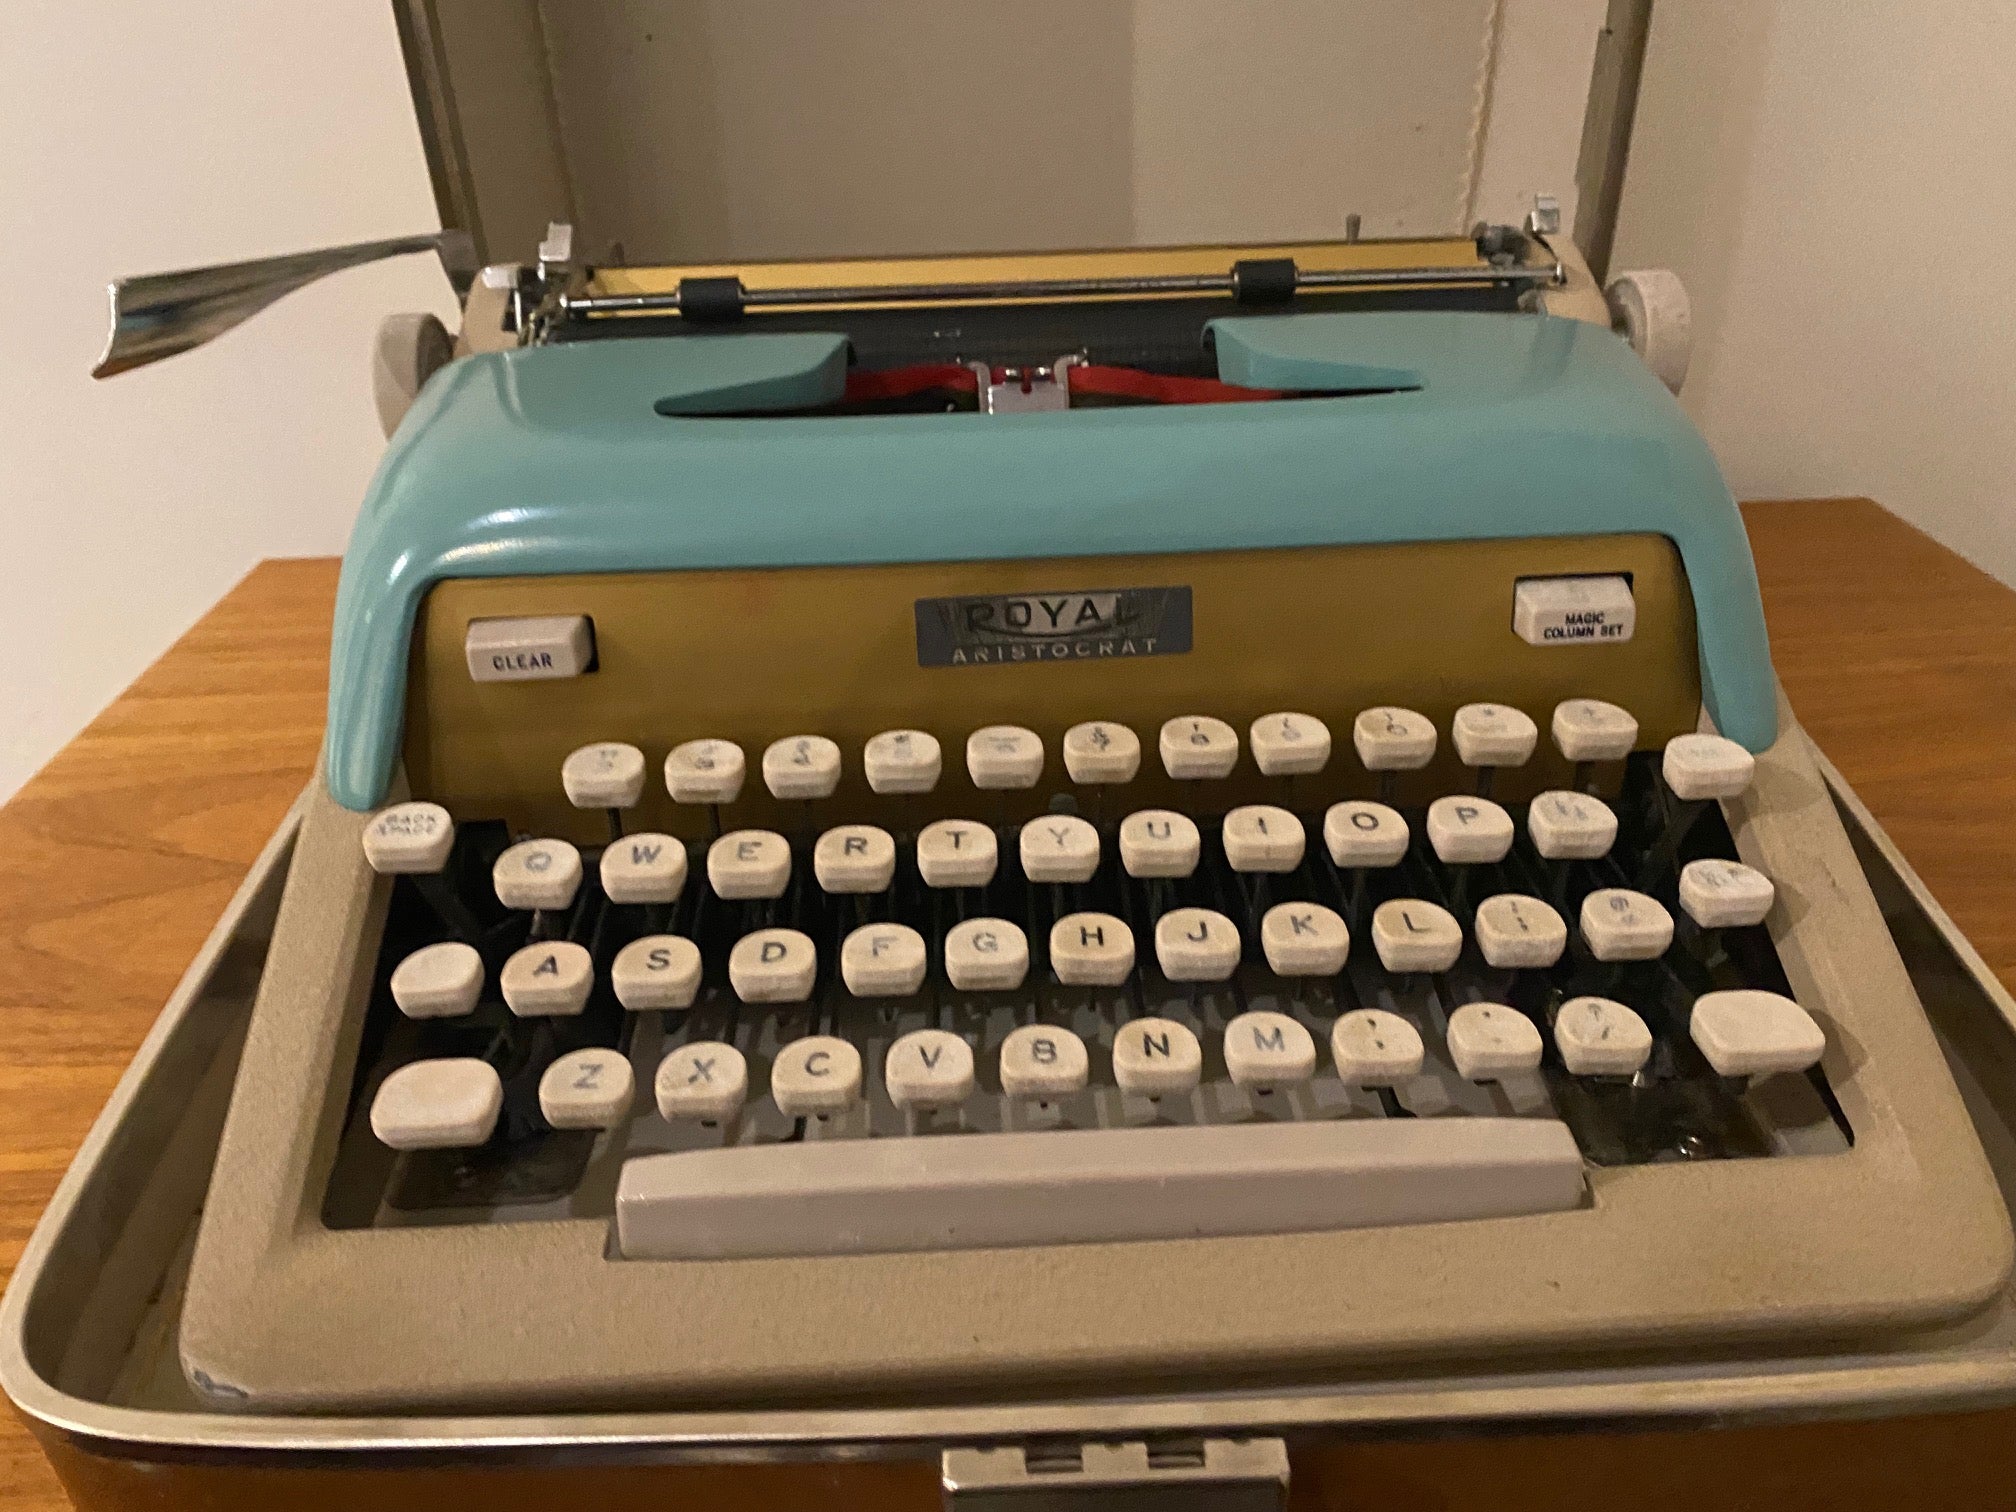 Royal Aristocrat Typewriter- Cook Street Vintage